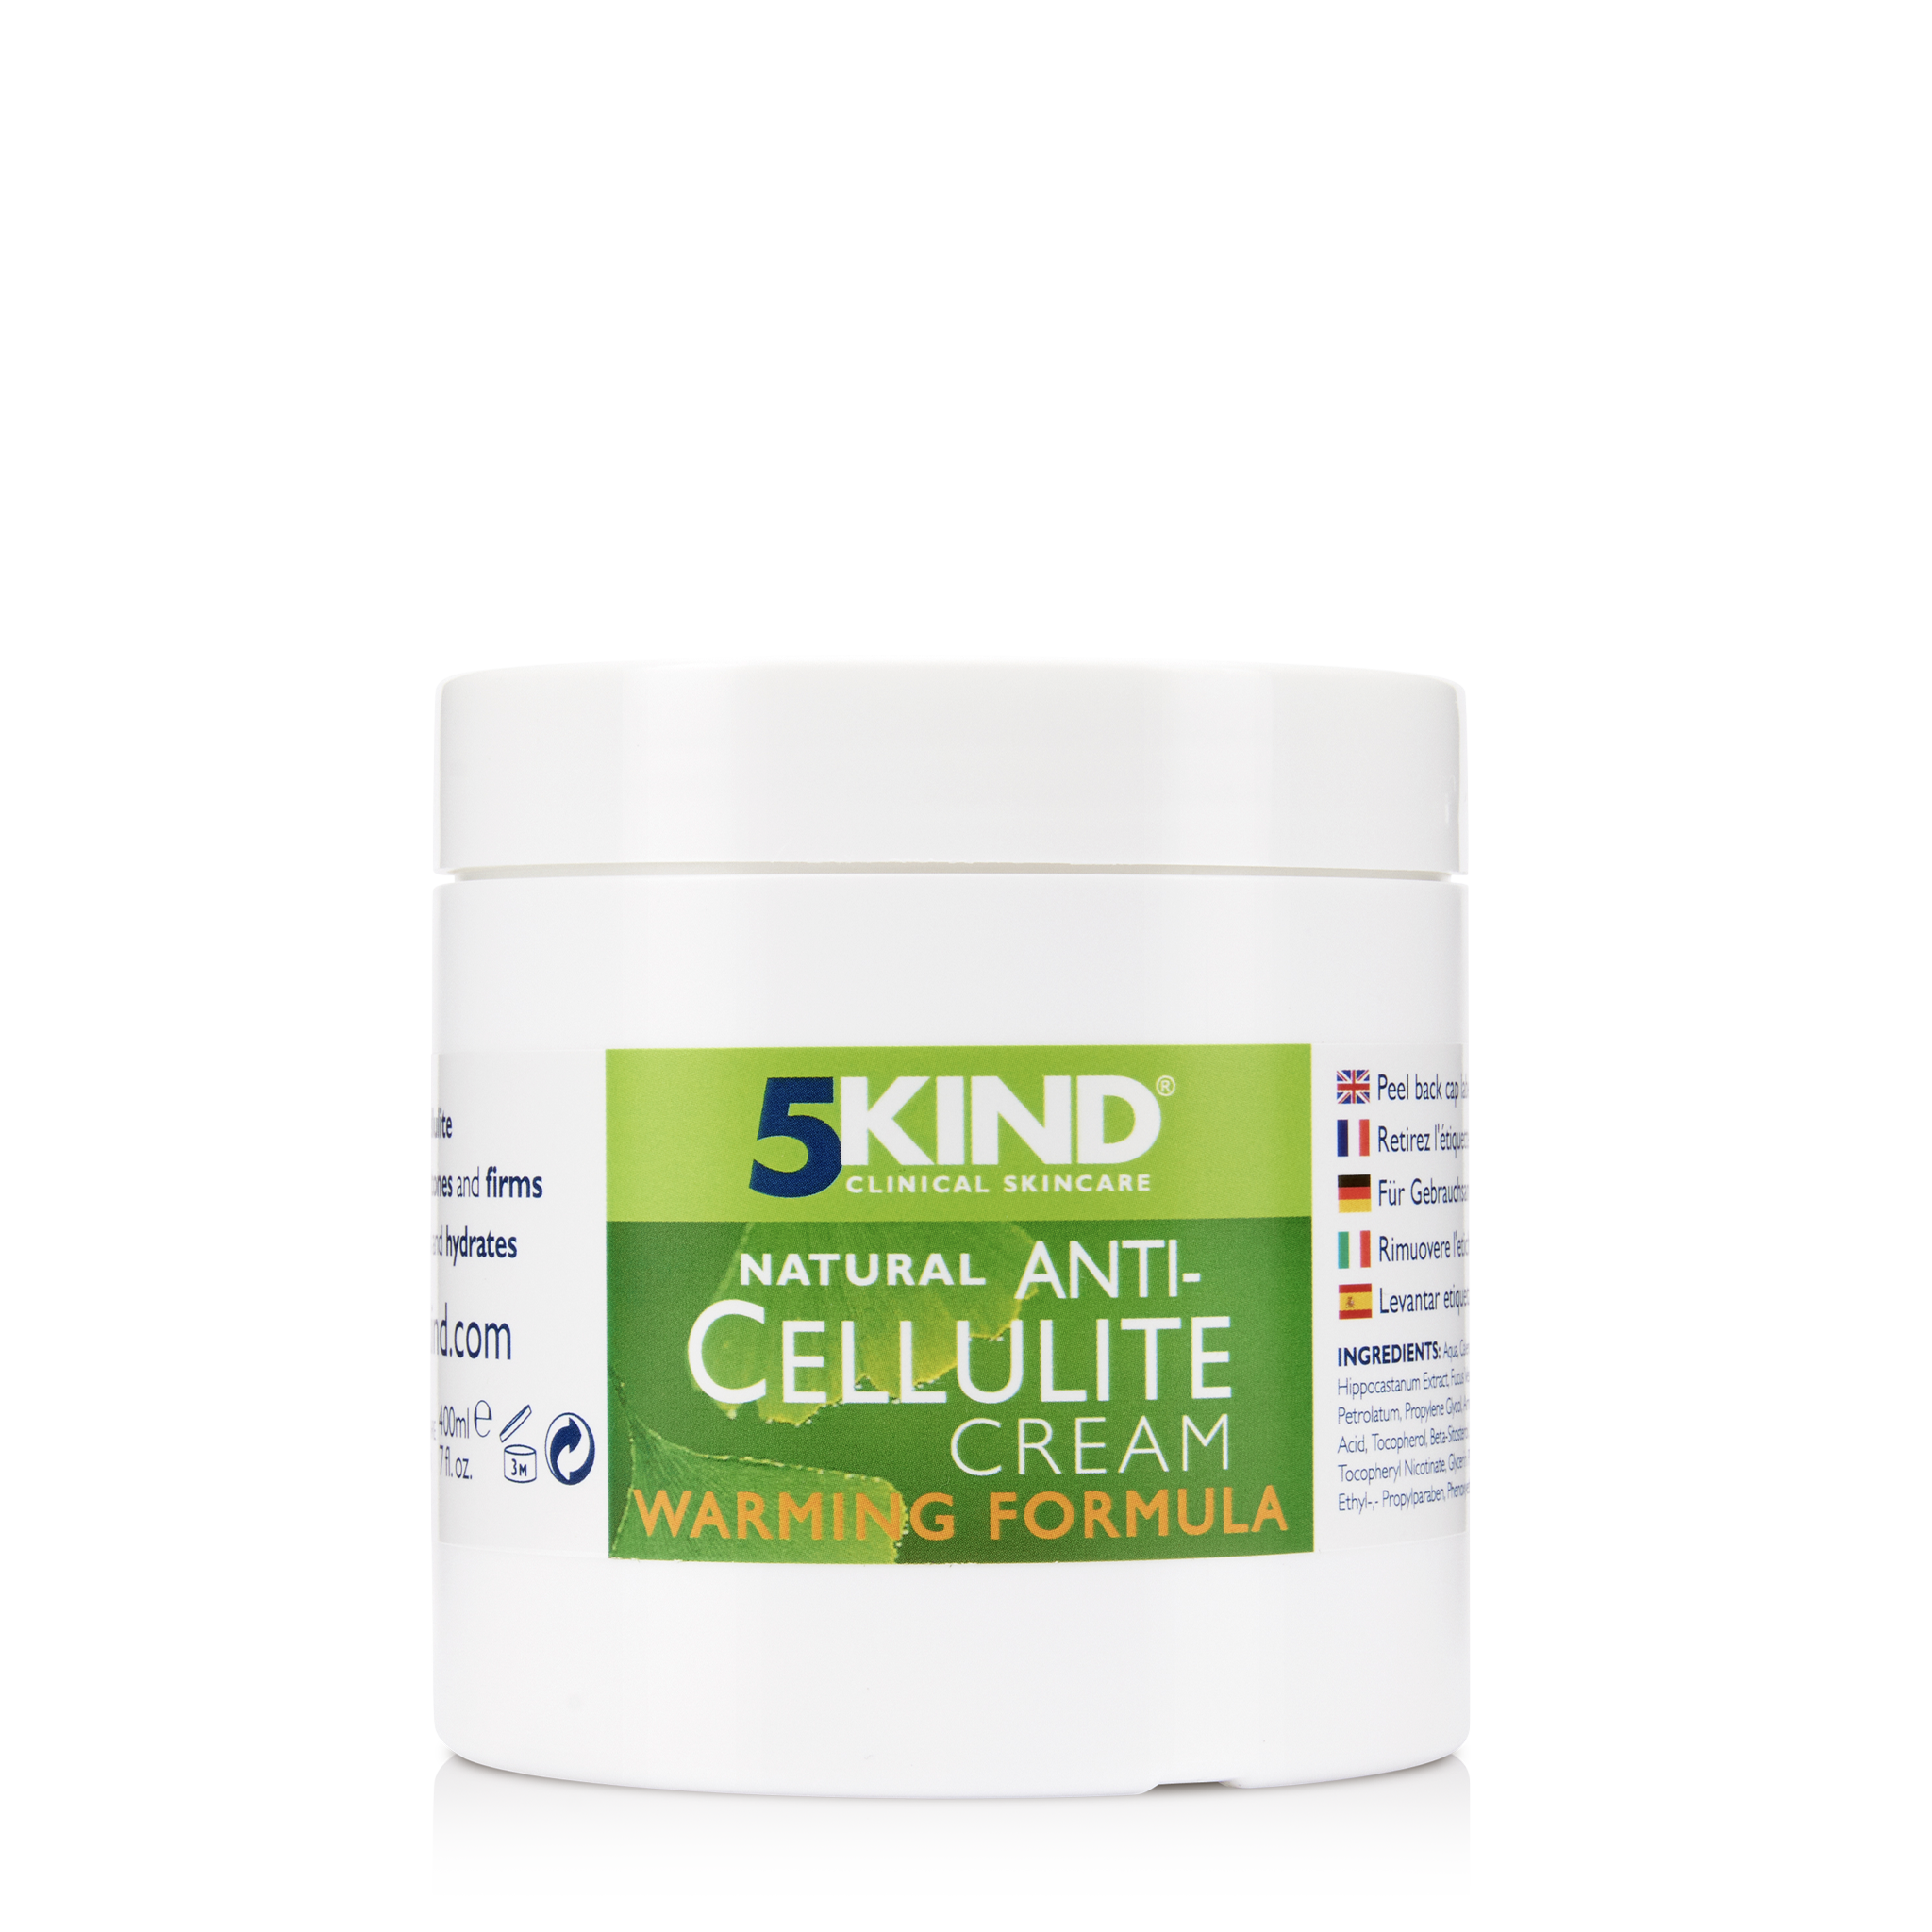 Natural Cellulite Toning Cream